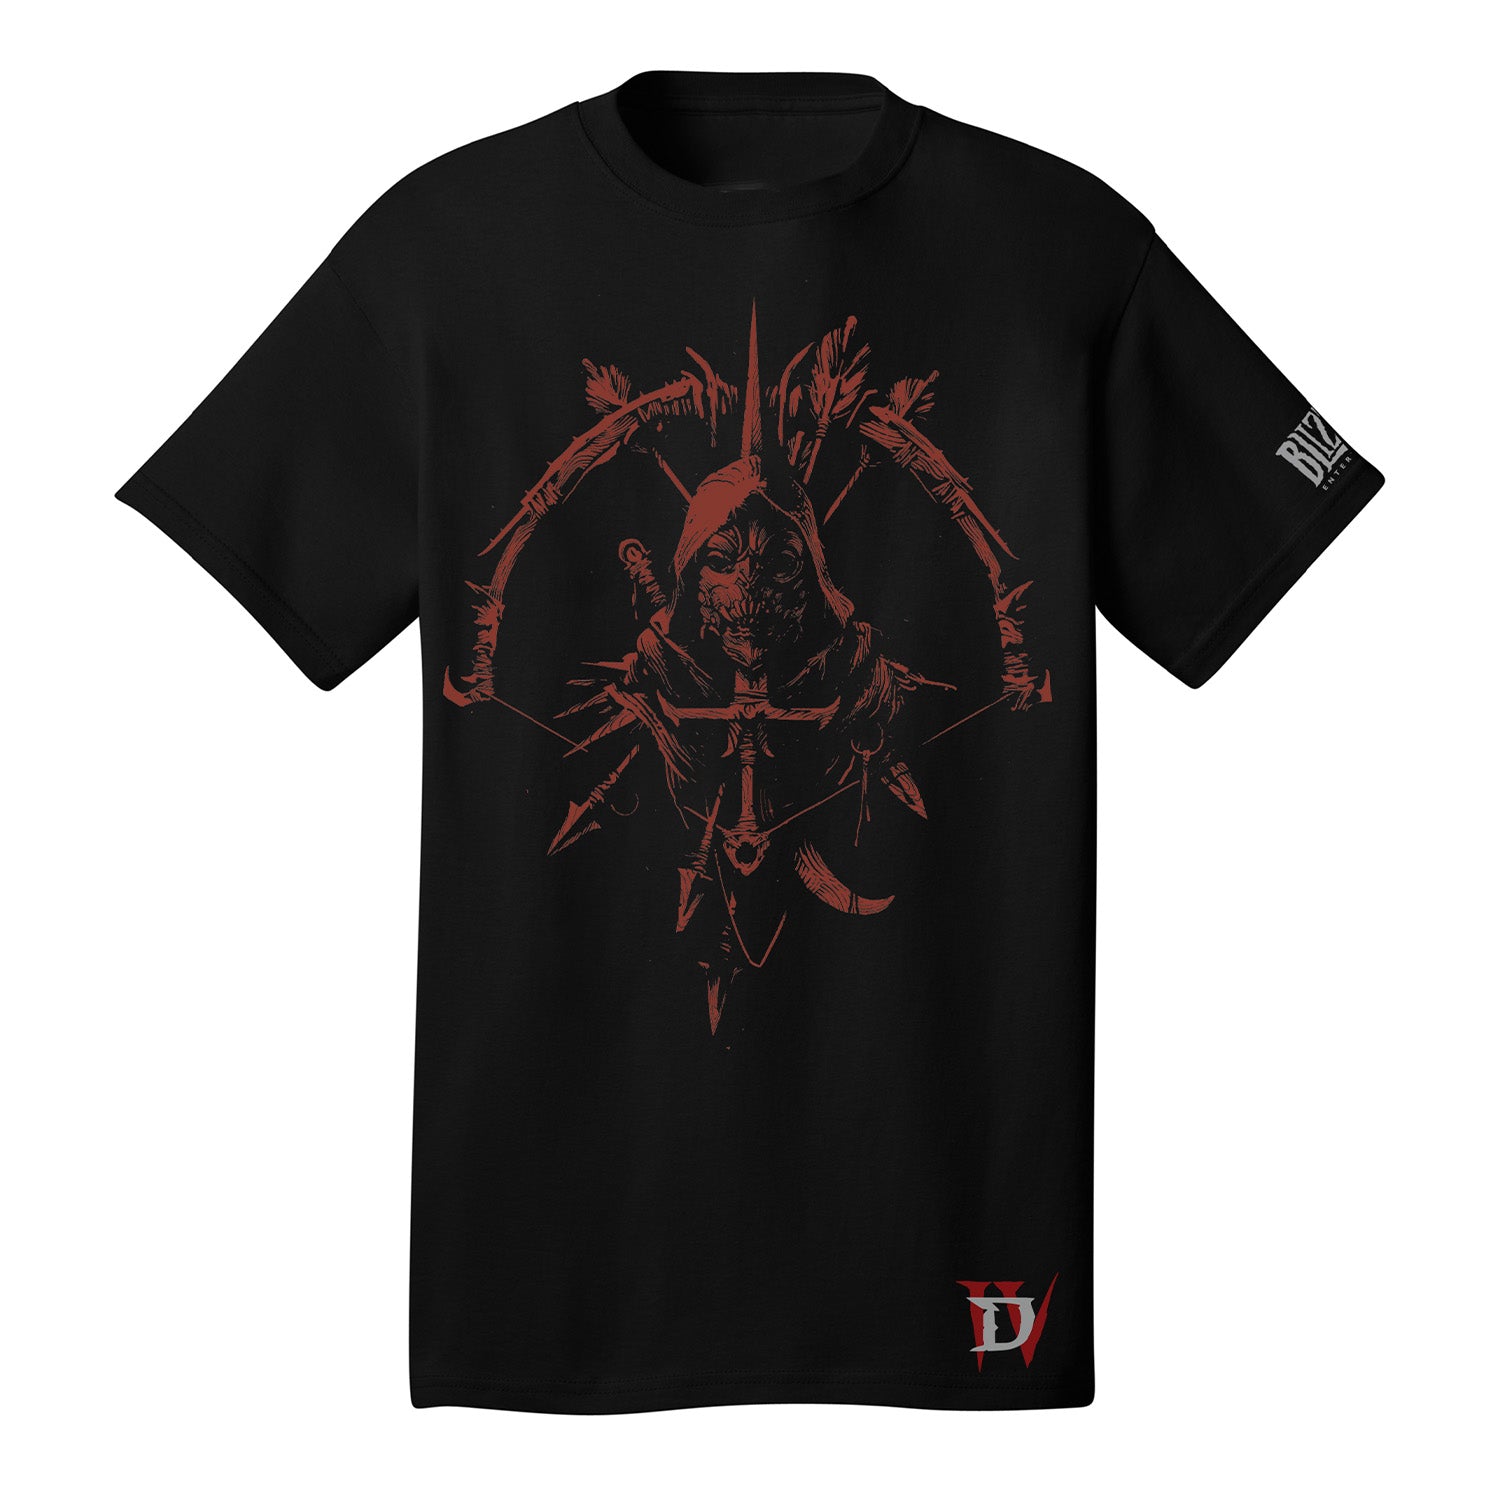 Diablo IV Rogue Black T-Shirt - Front View